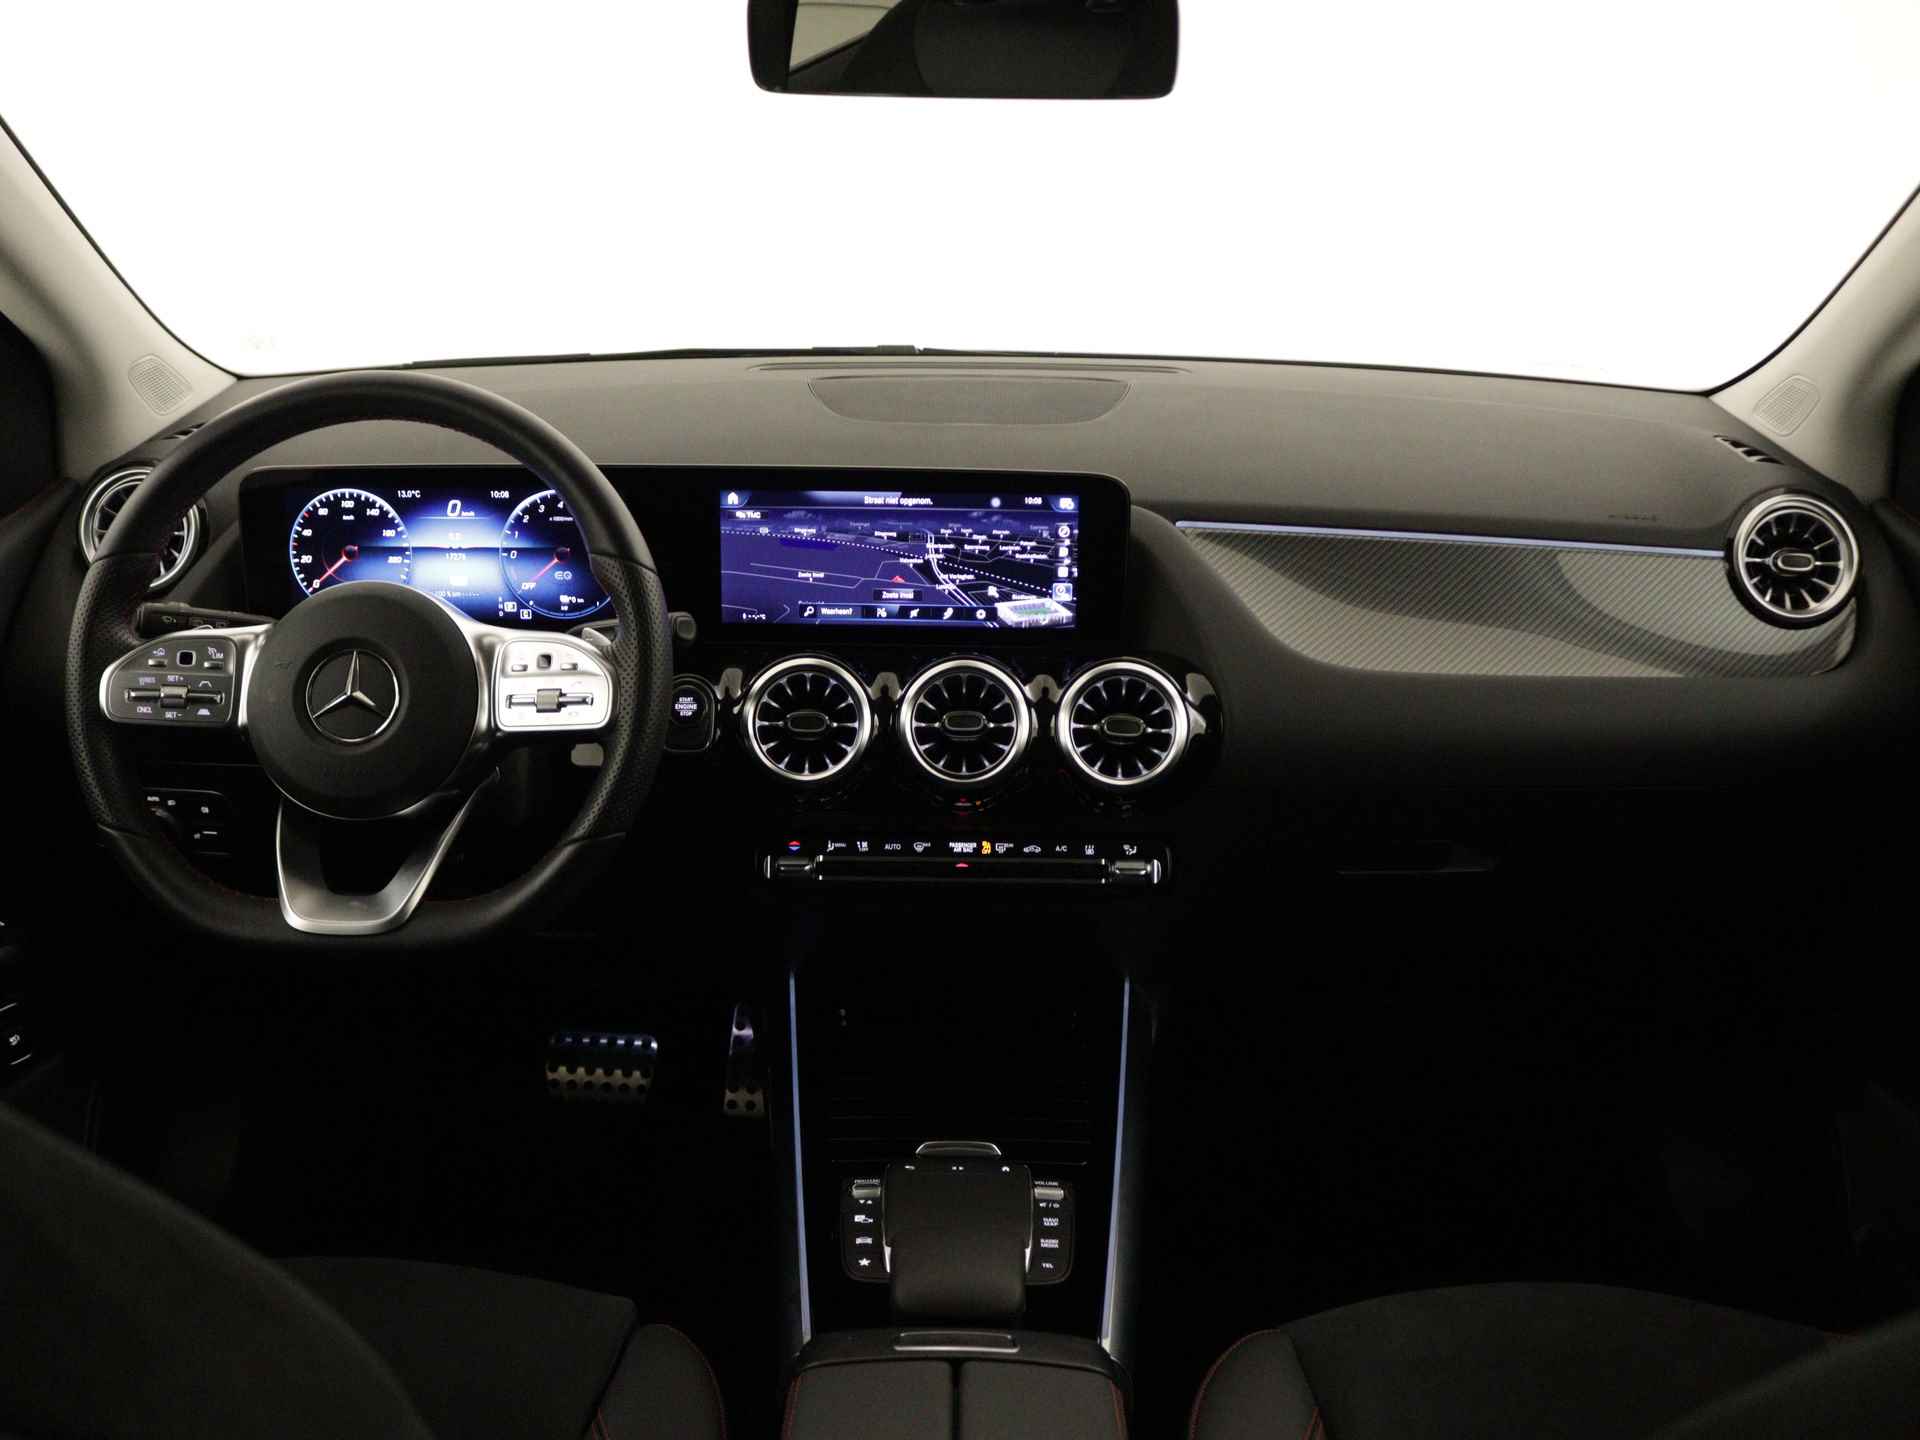 Mercedes-Benz B-Klasse 250 e AMG Line Limited Multispaaks lichtmetalen velgen | MBUX wide screen | Navigatie | Parking support | Inclusief 24 maanden Mercedes-Benz Certified garantie voor Europa. | - 6/45